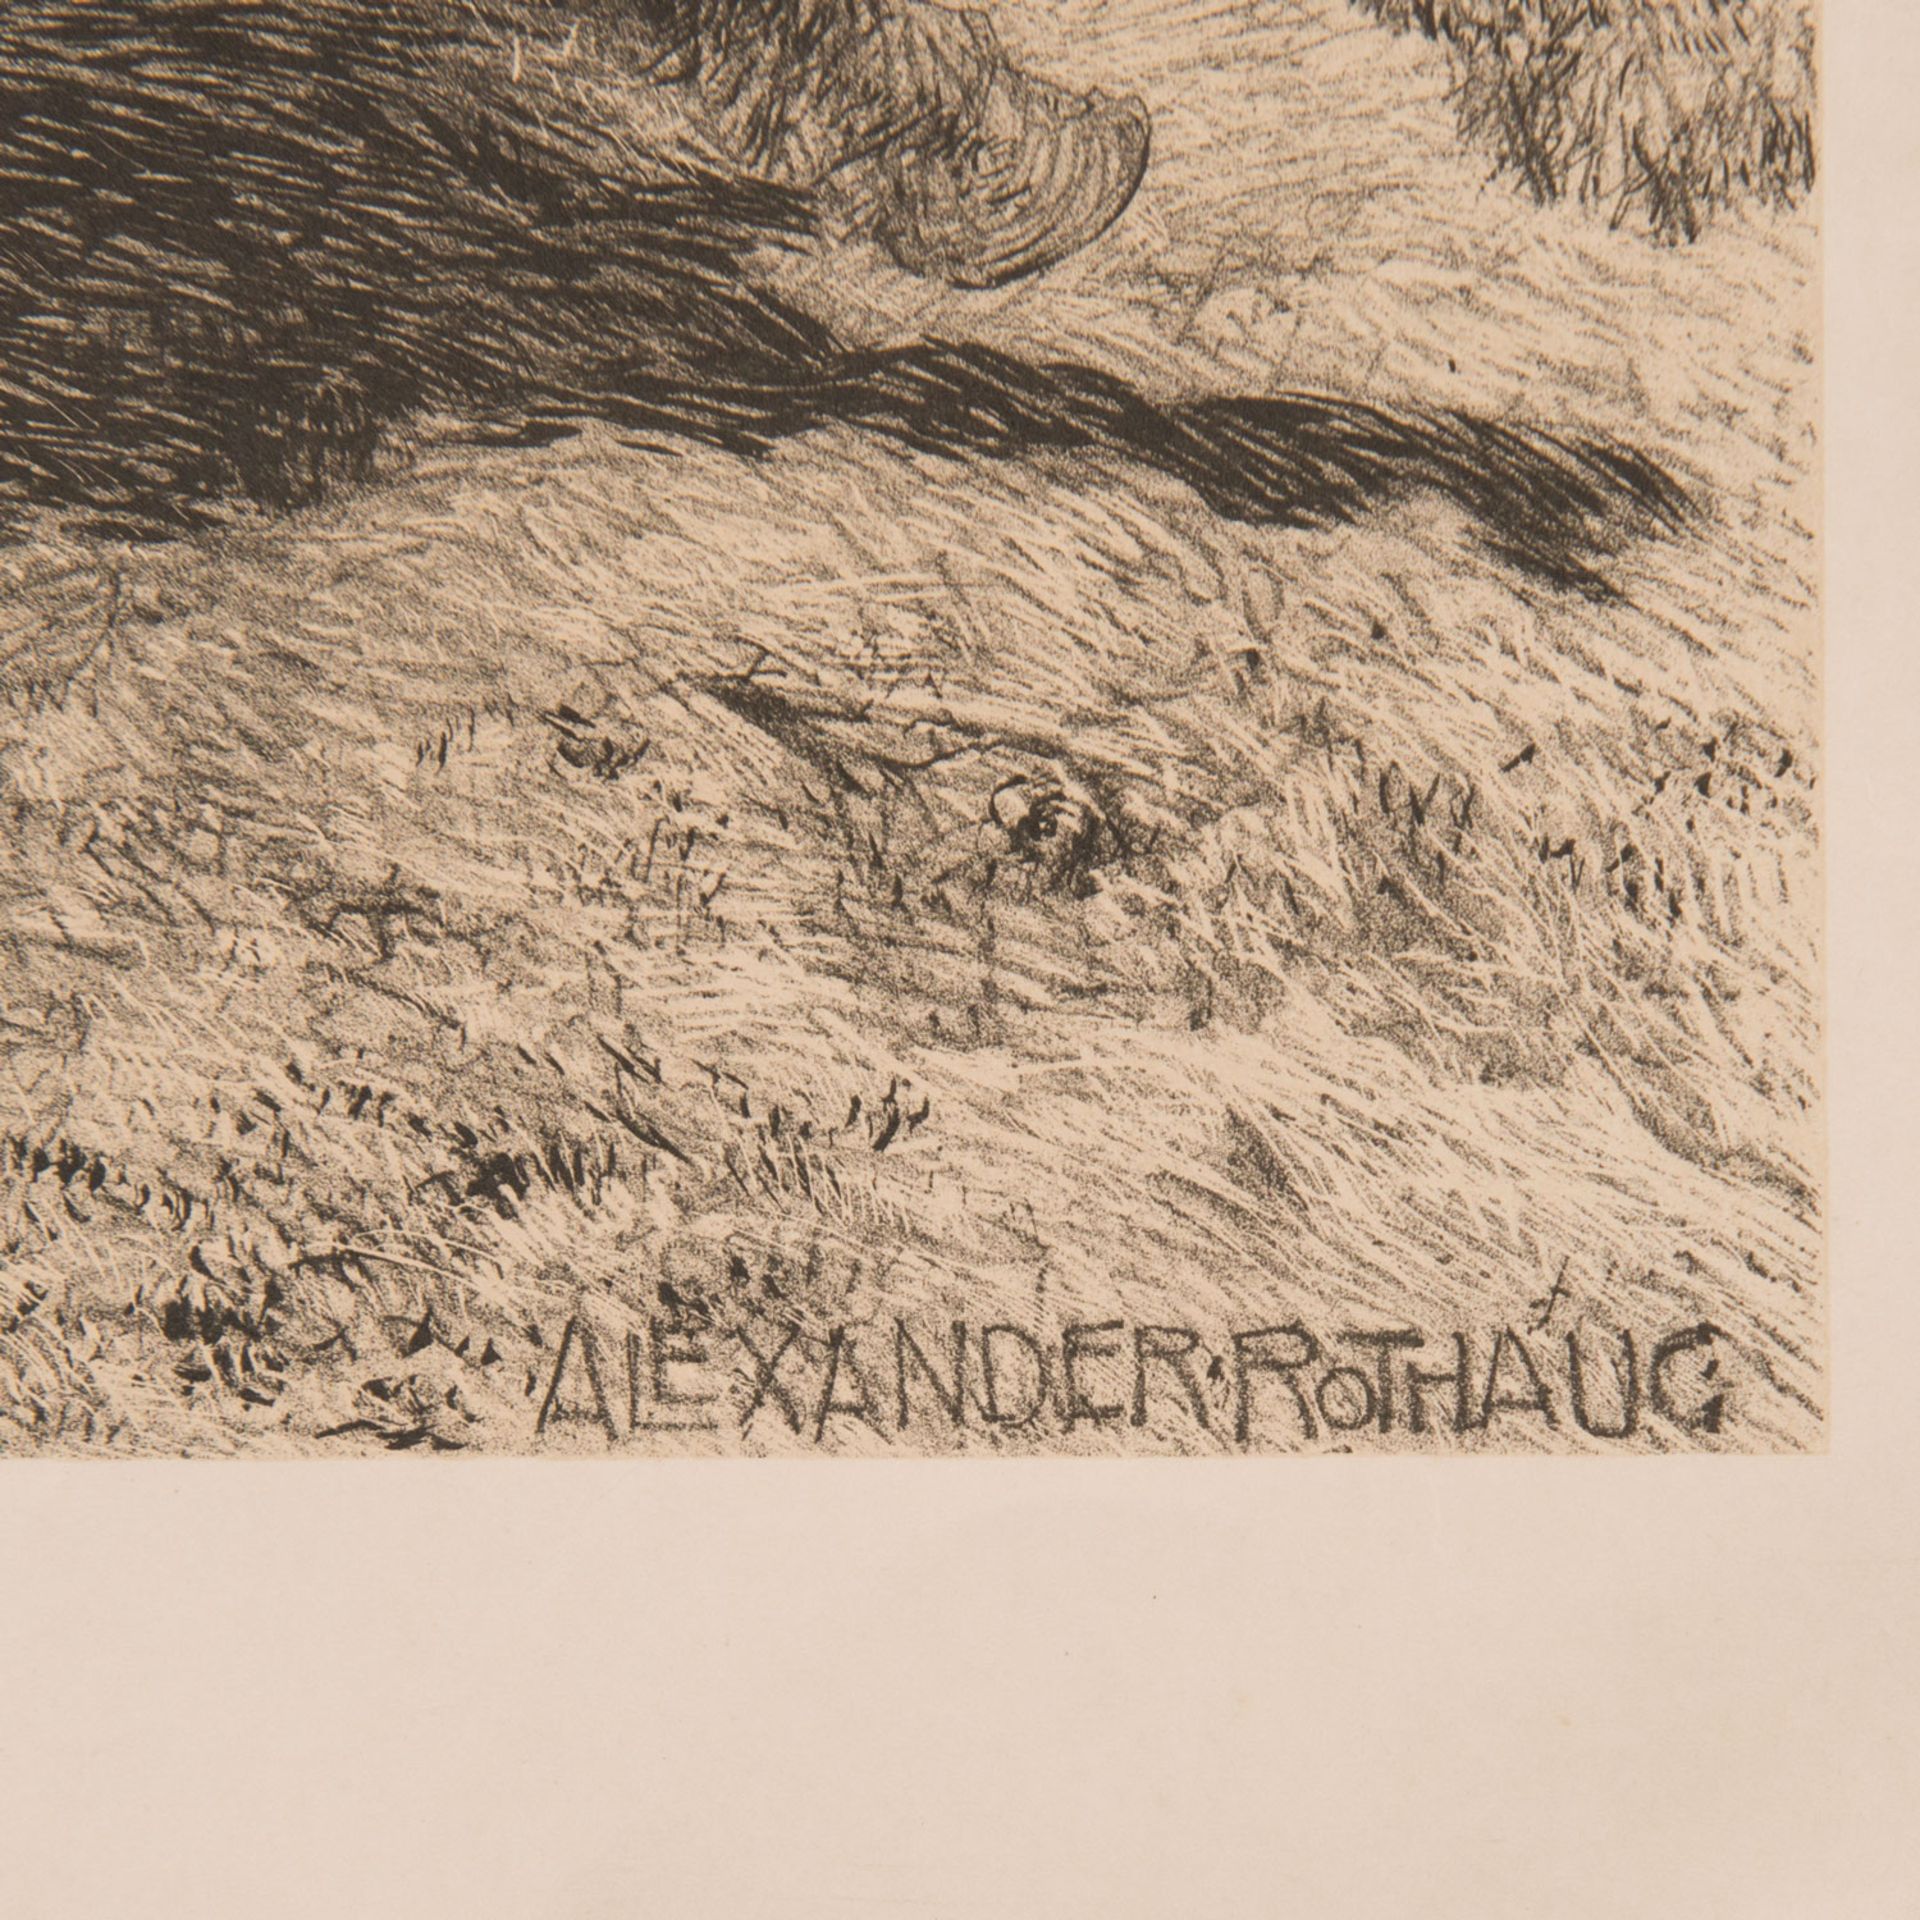 Alexander Rothaug (1870 – 1946) – Graphic - Bild 3 aus 3